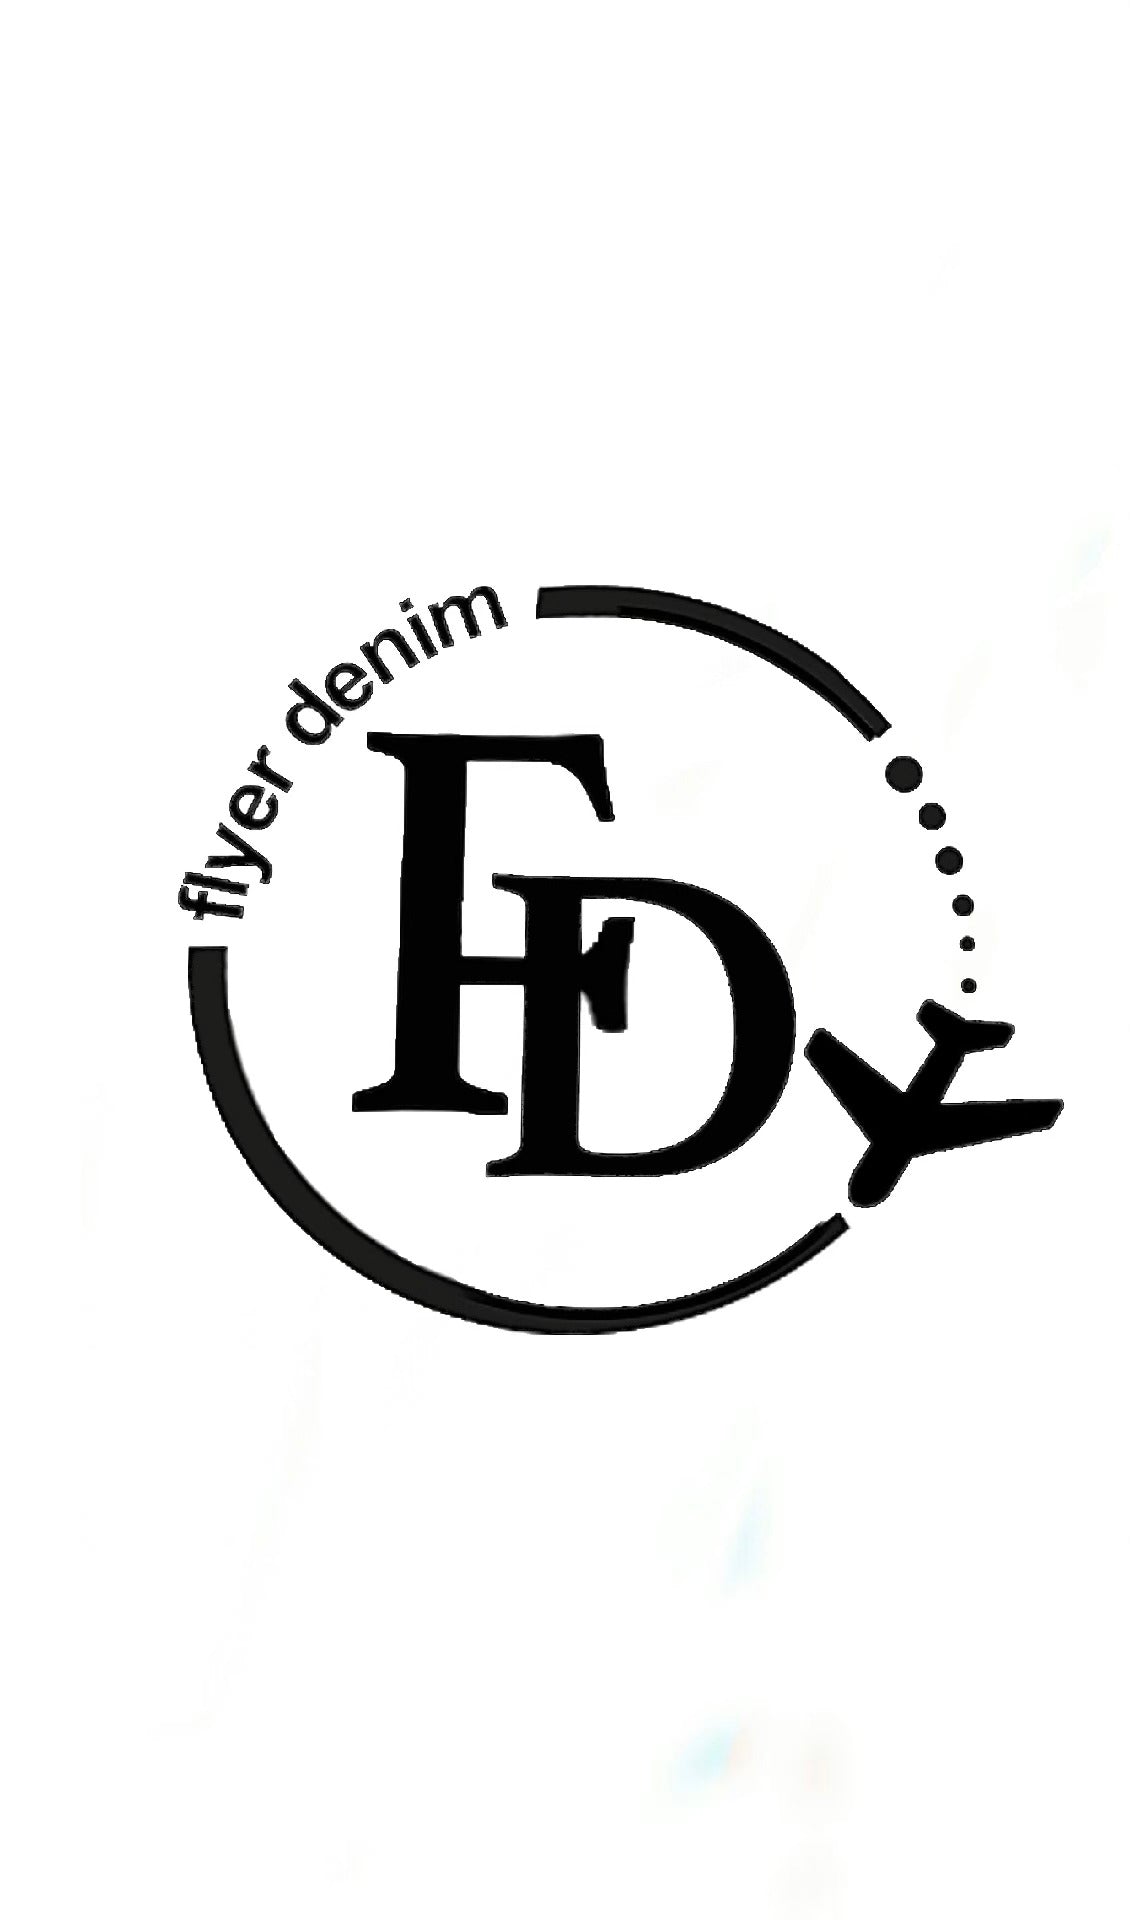 Premium Vector | Original vintage denim logo